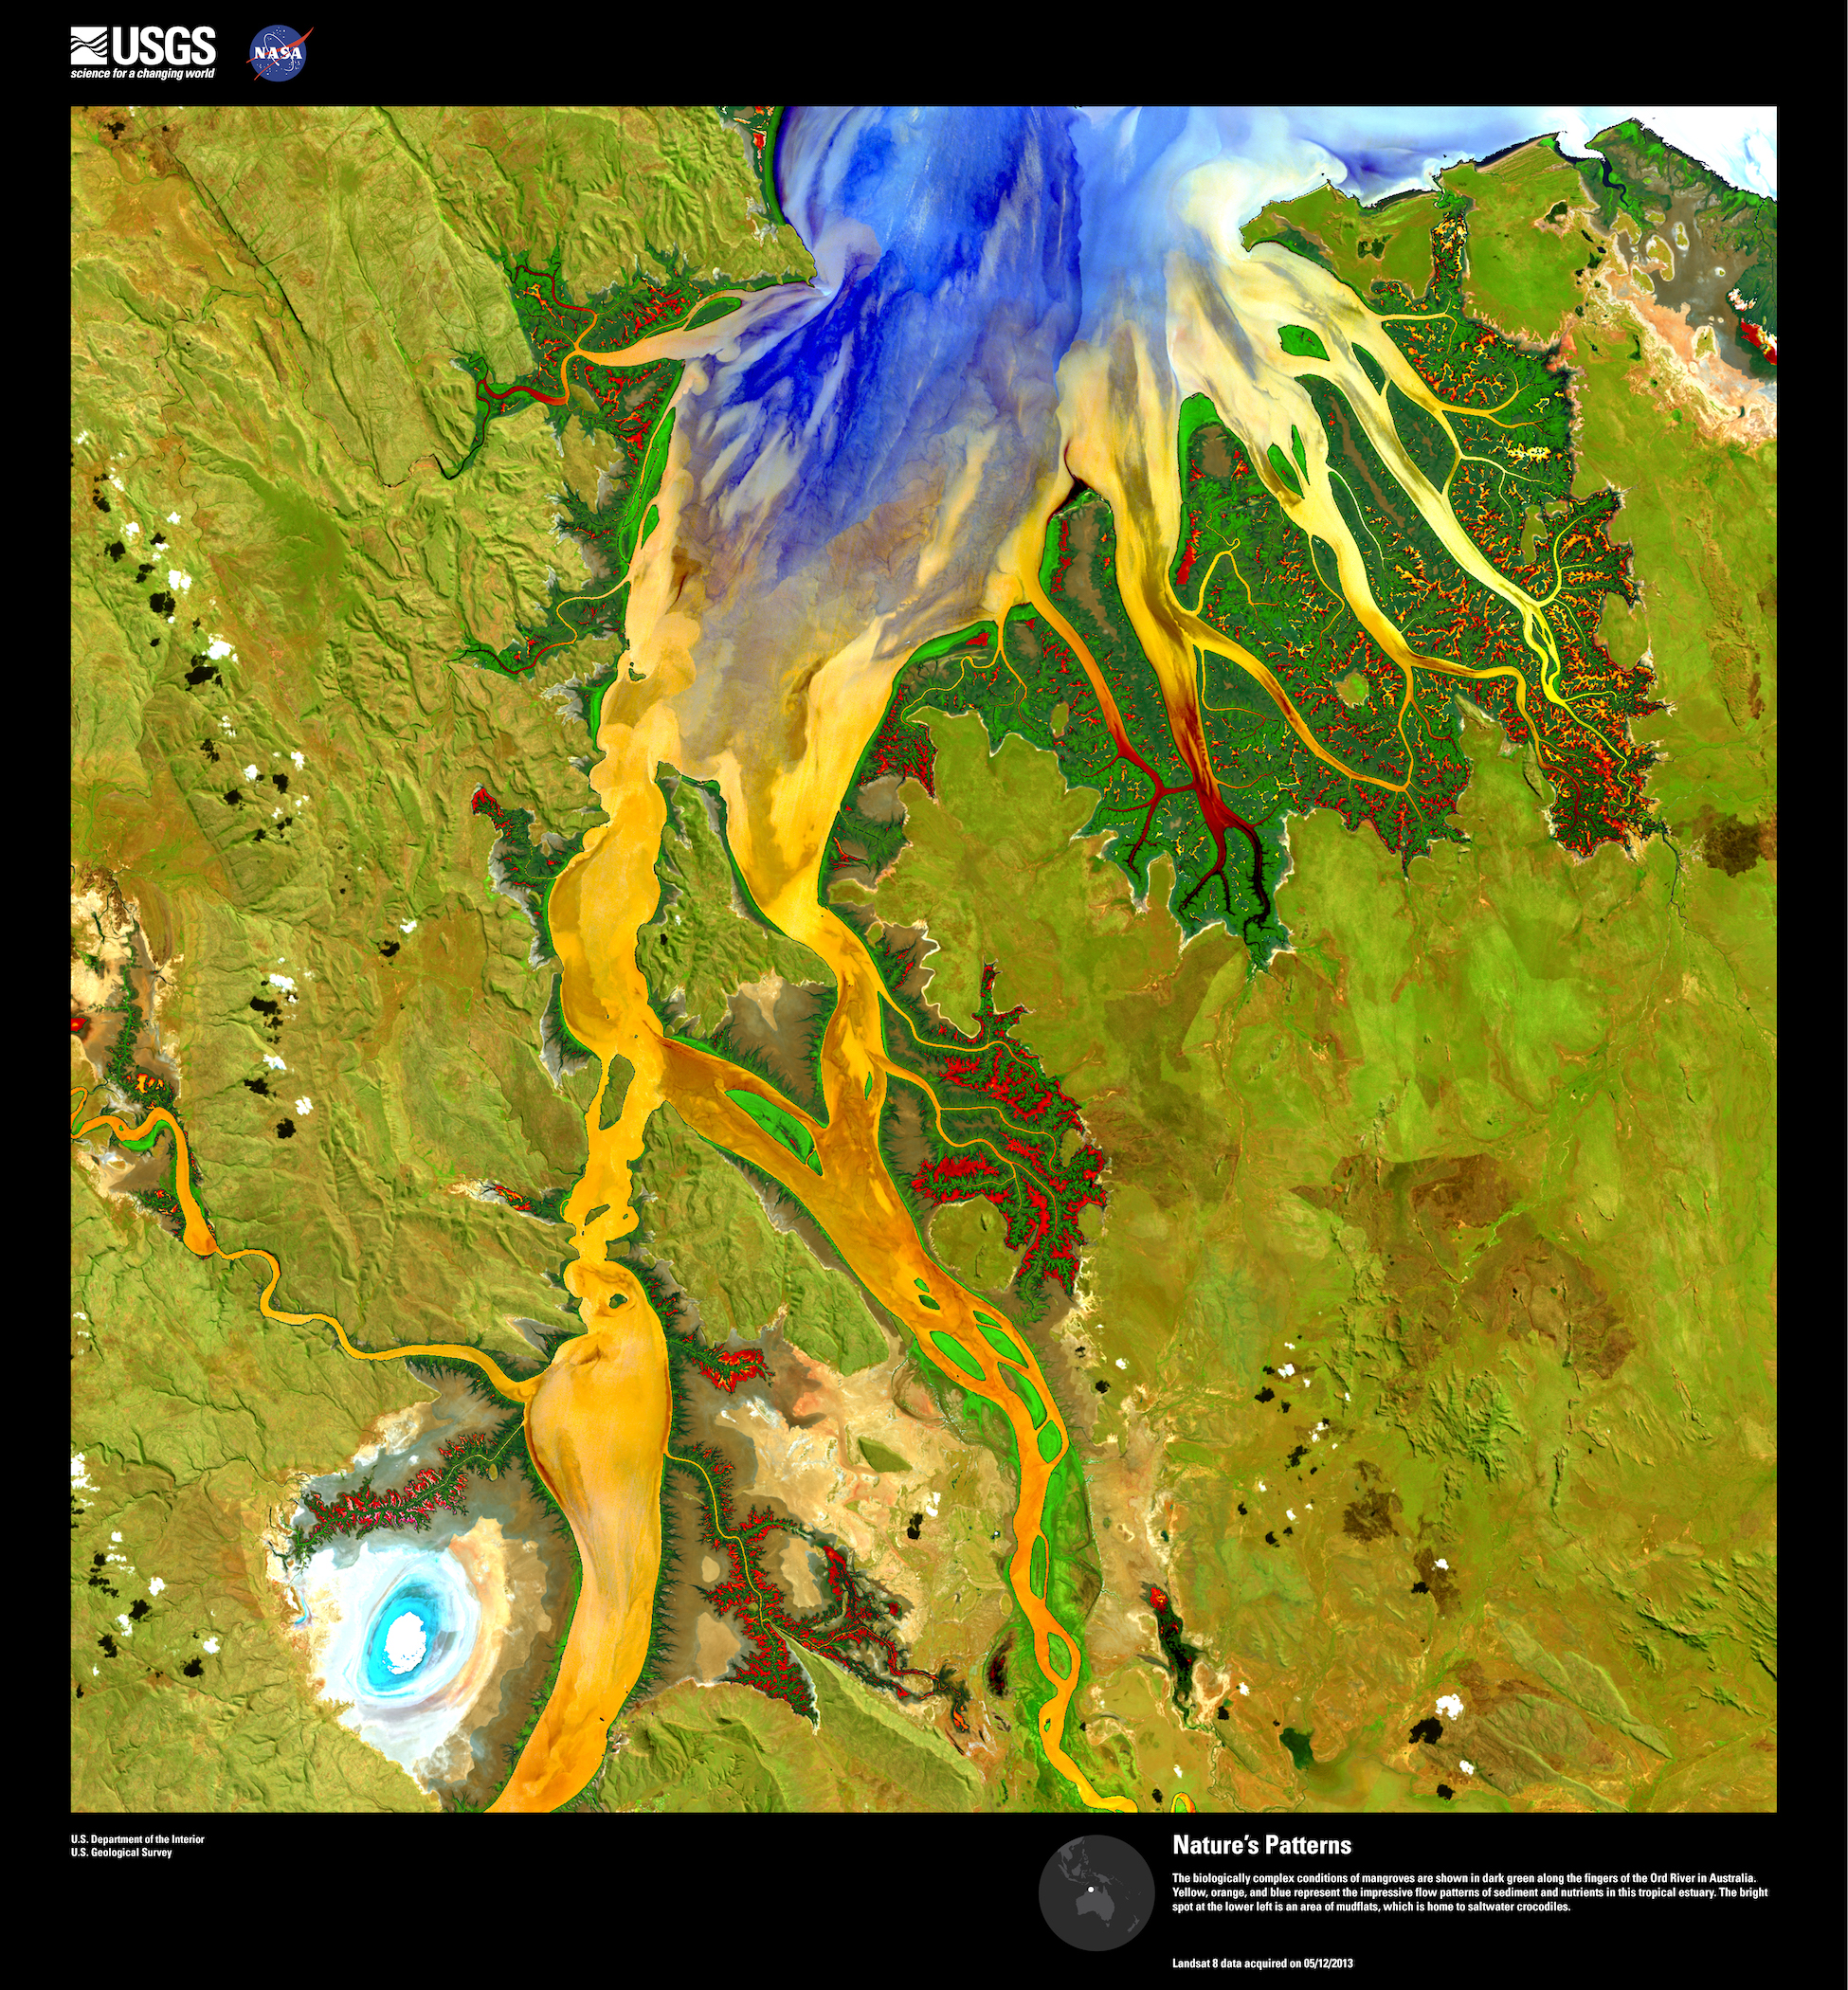 Obrázek 12: Satelitní snímek Landsat 8 řeky Old River v Austrálii zobrazená v tzv. nepravých barvách